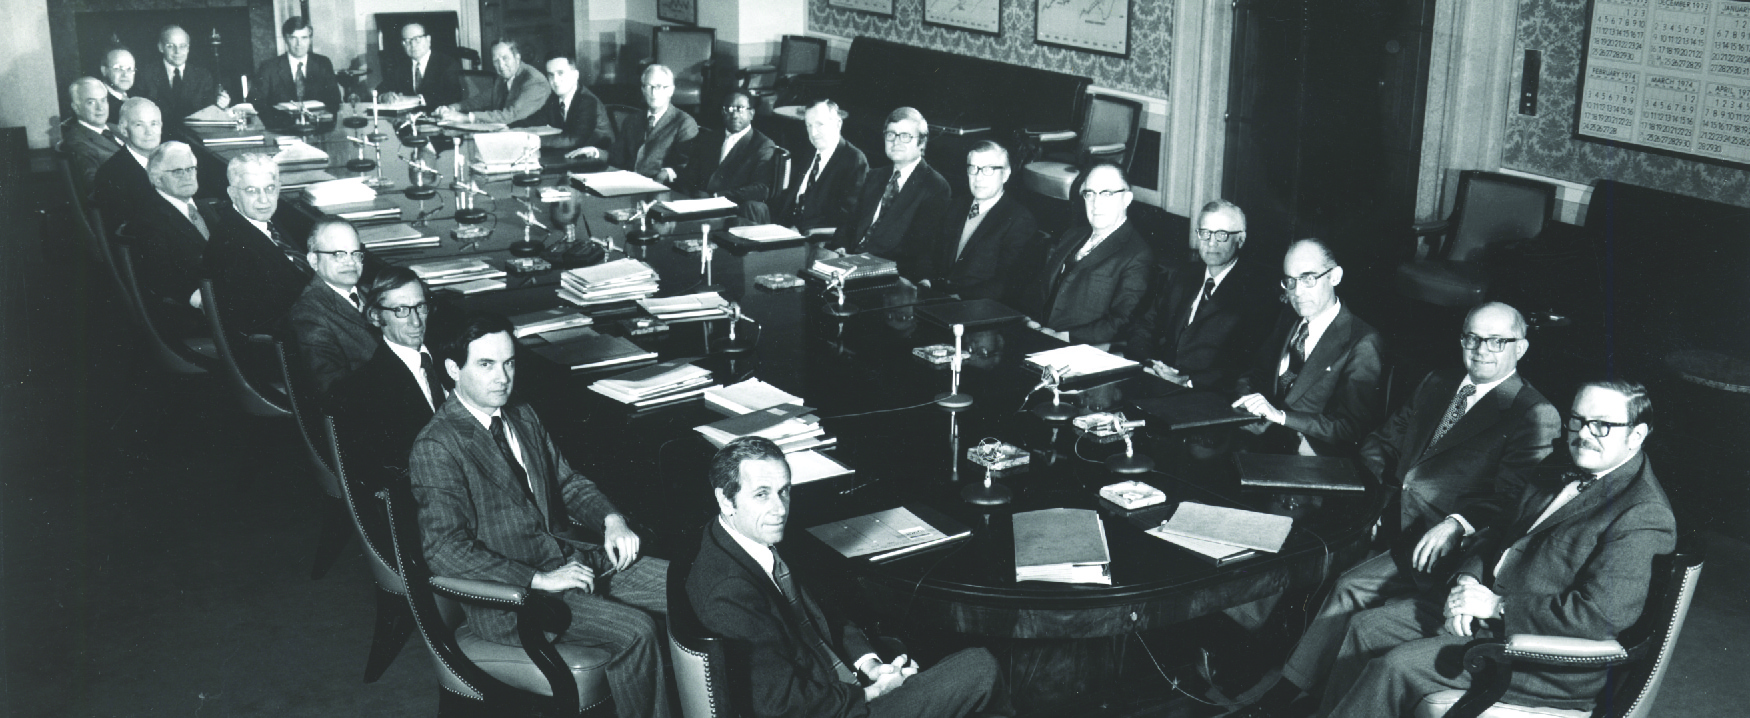 Cette image montre vingt-trois hommes blancs et un homme noir en costume assis autour d'une grande table de style salle de réunion.